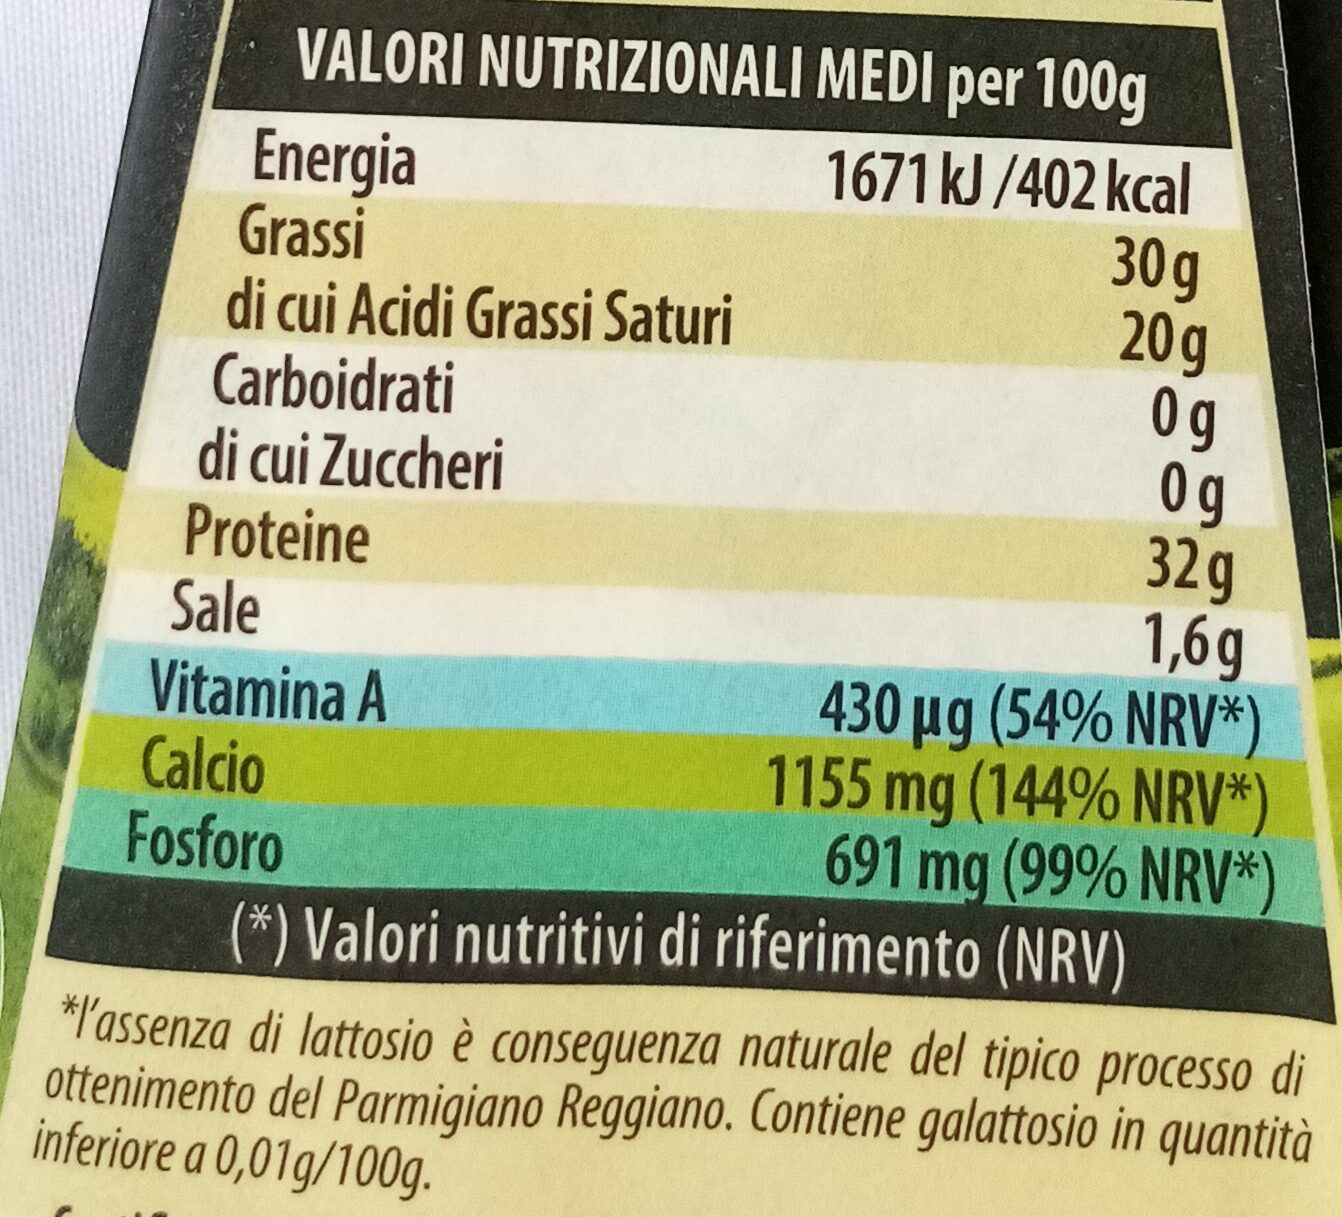 Parmesan - Tableau nutritionnel - it